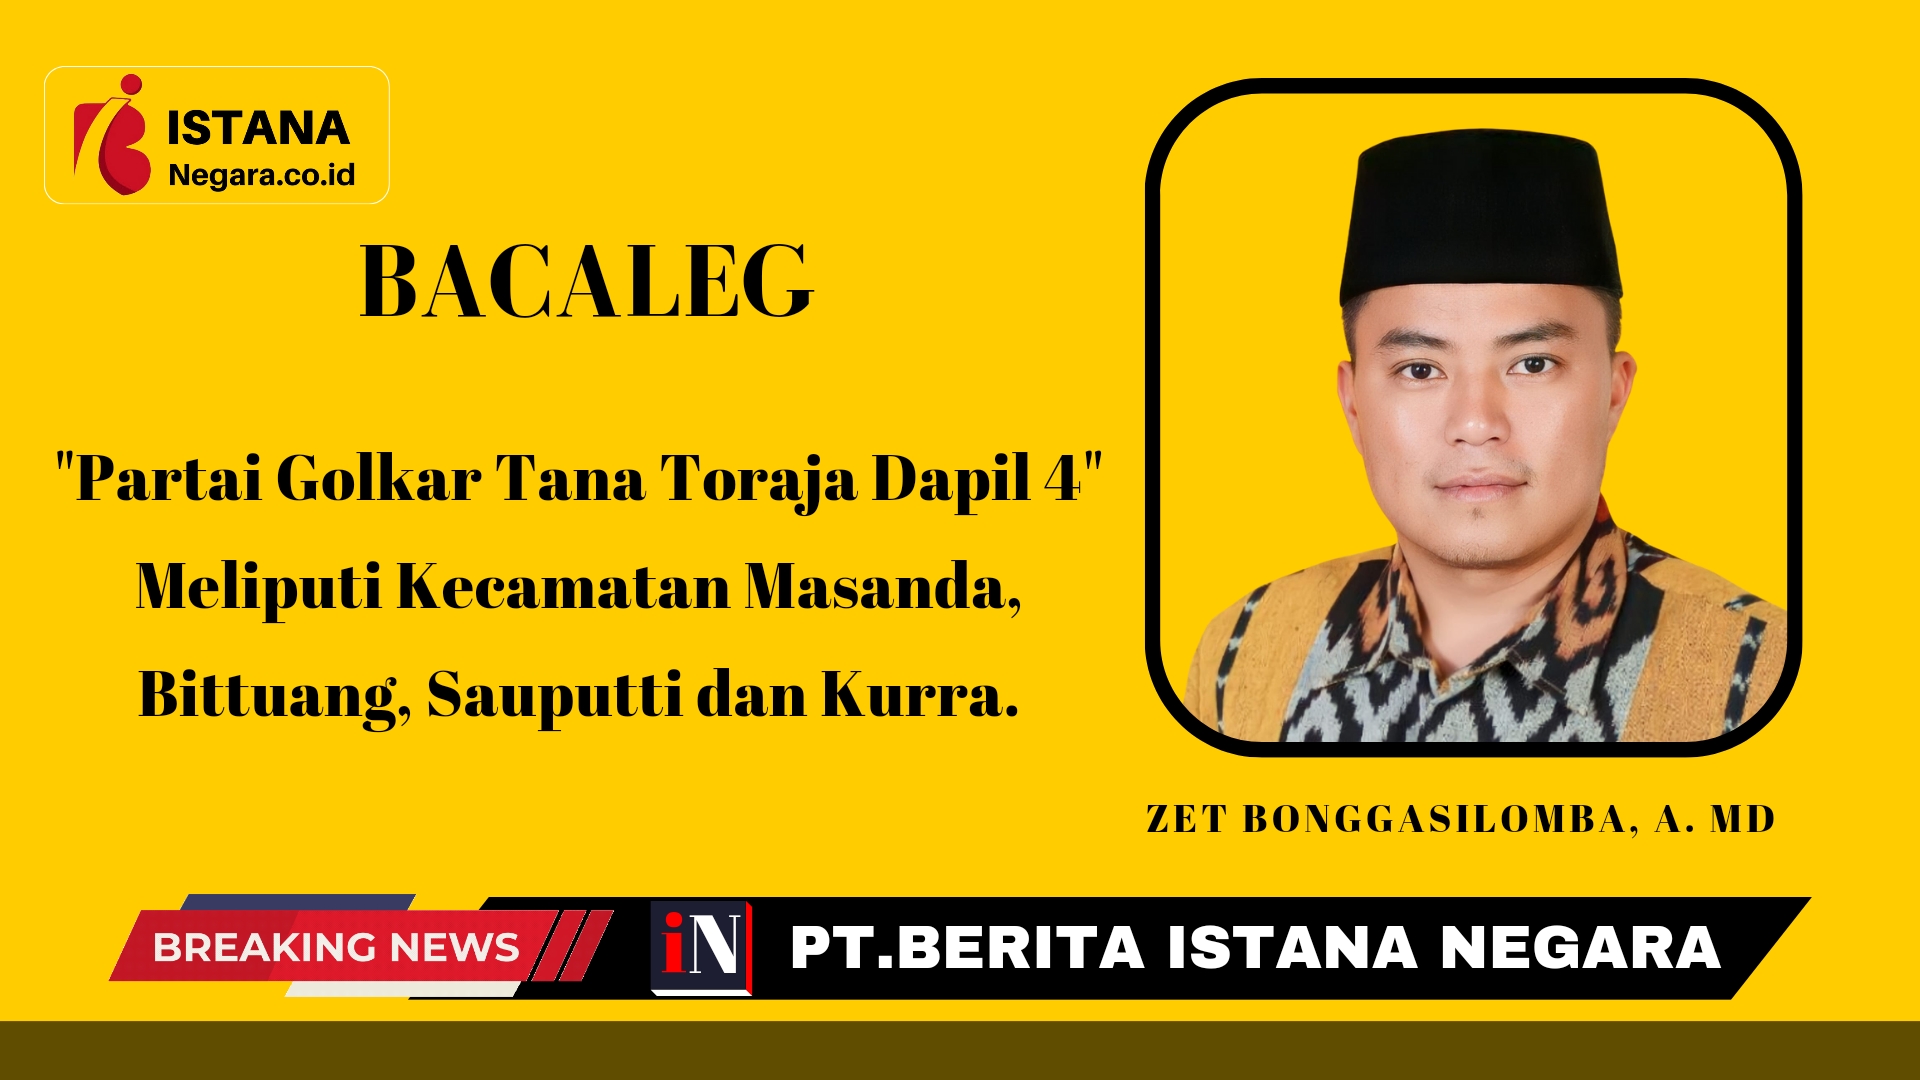 Zet Bonggasilomba, A. Md (Bacaleg Partai Golkar Tana Toraja Dapil 4).